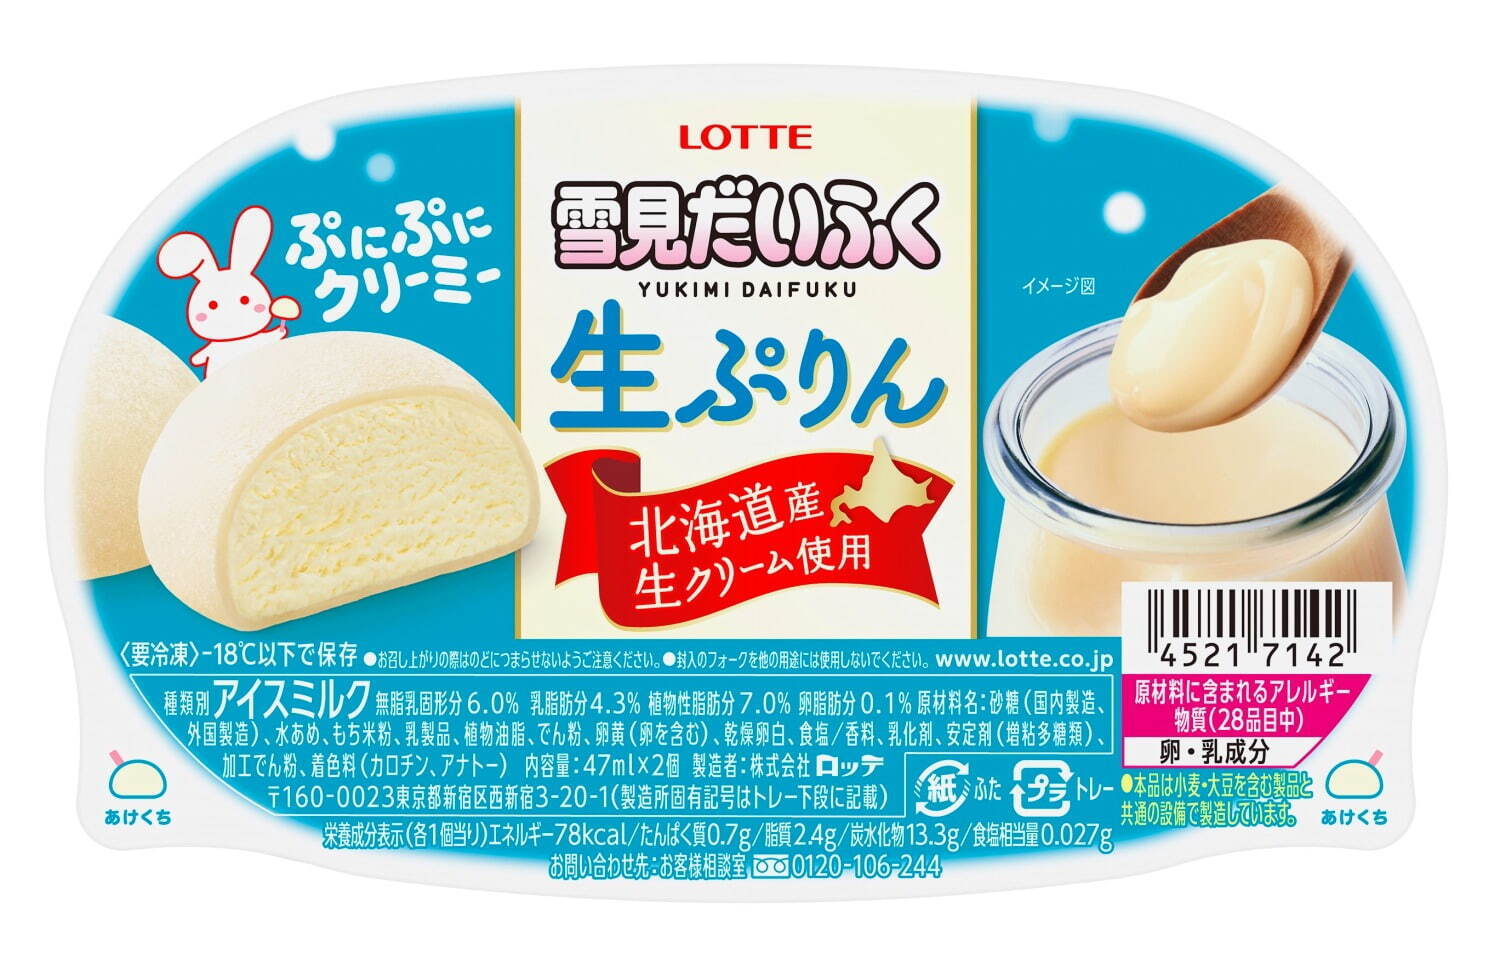 「雪見だいふく生ぷりん」北海道産生クリームアイス×モチモチ食感のおもち